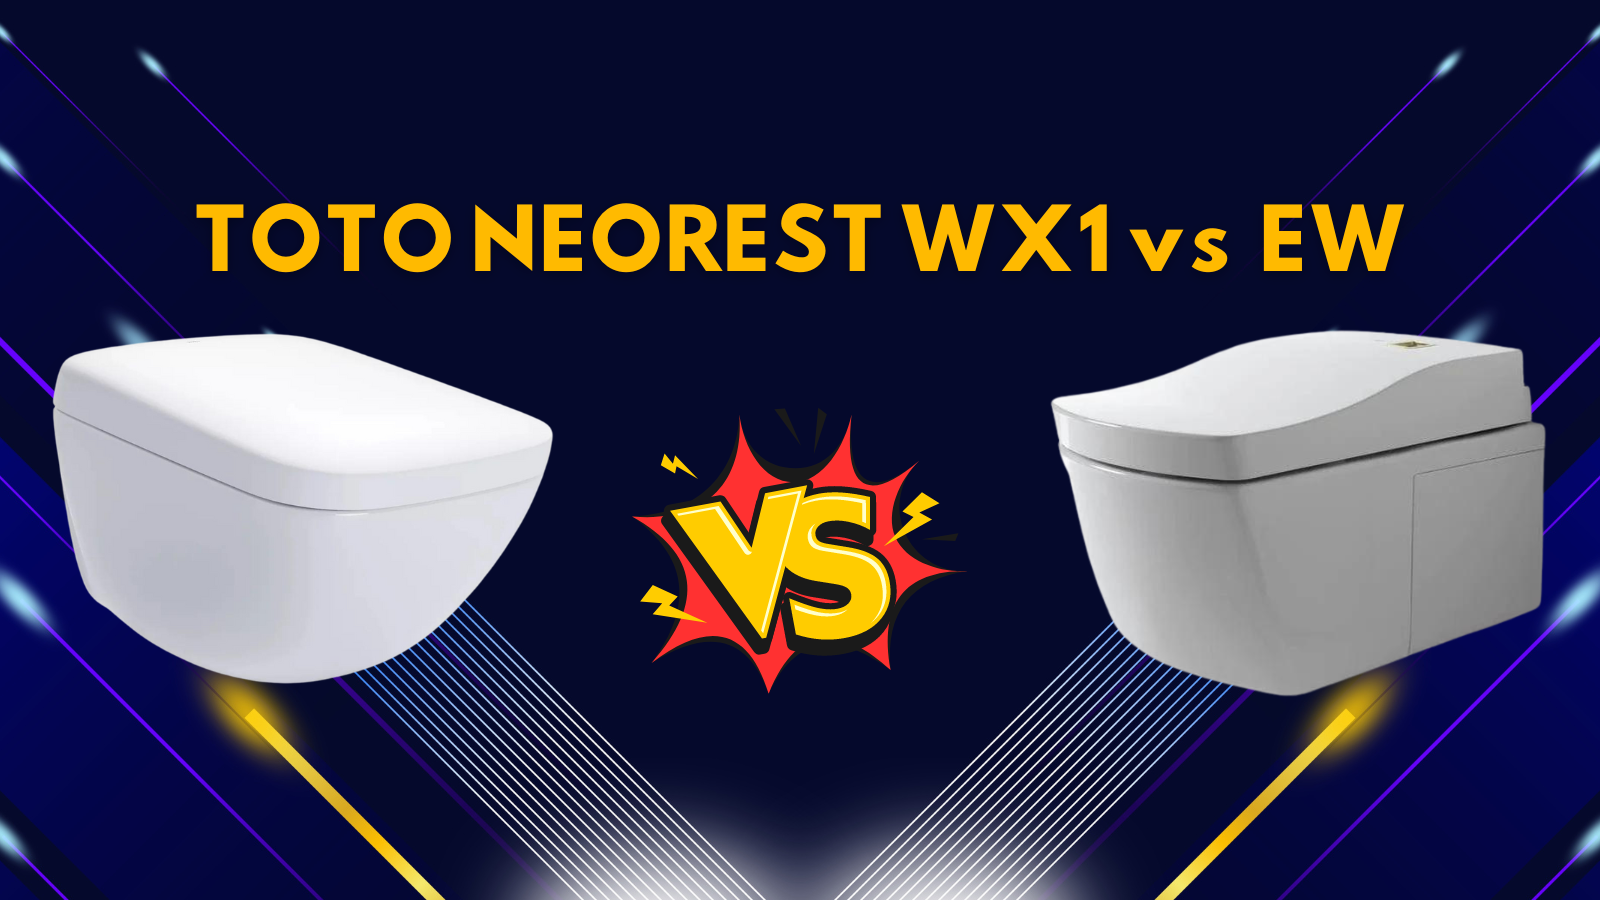 toto neorest wx1 vs toto neorest ew comparison article cover image